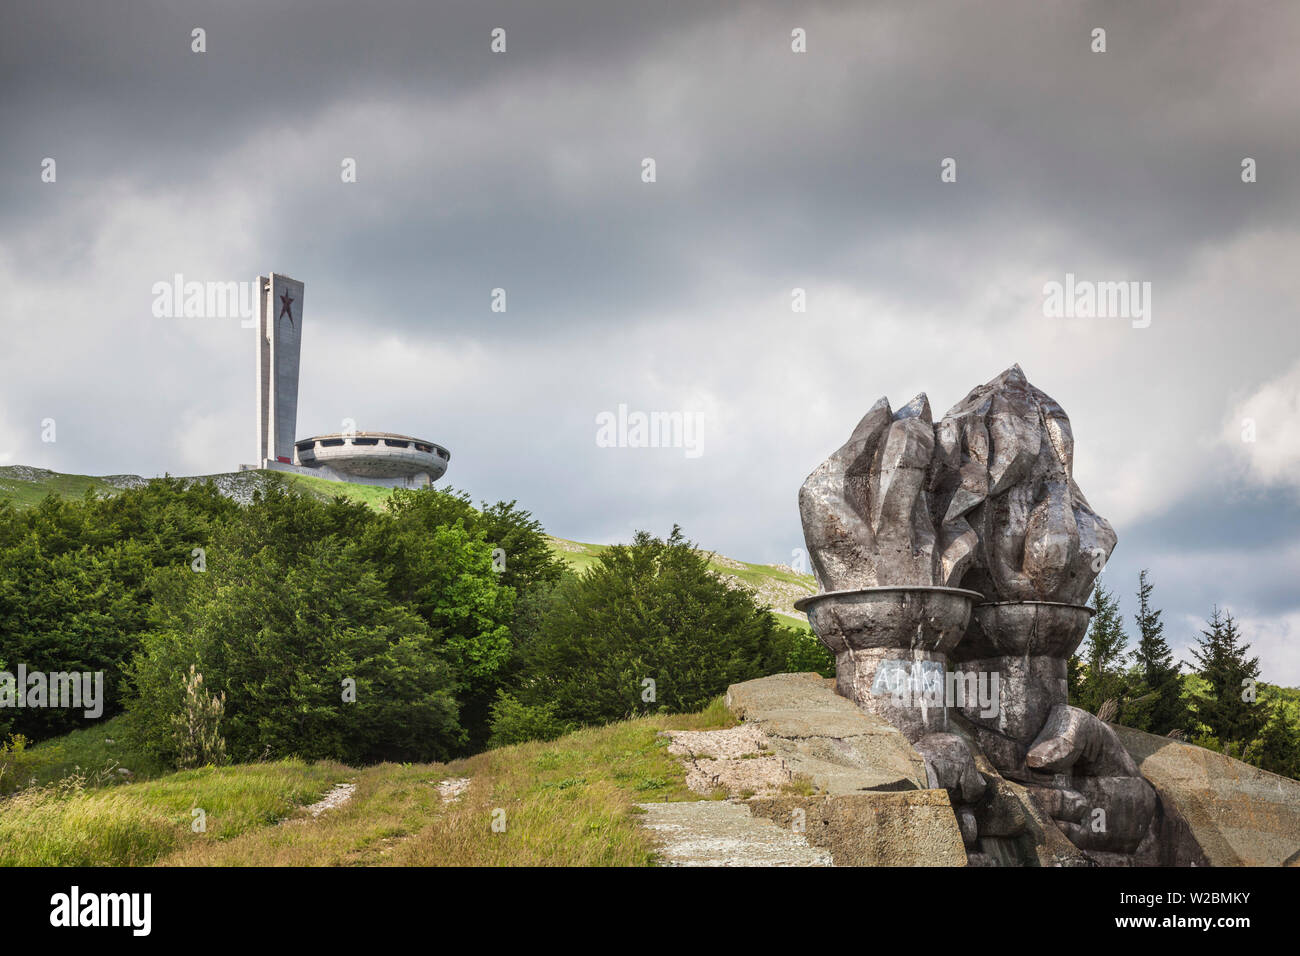 La Bulgaria, centrale Monti, Shipka, Shipka Pass, Rovine dell'era sovietica Monumento Buzludzha, costruito in onore del partito comunista bulgaro nel1981, tardo pomeriggio Foto Stock